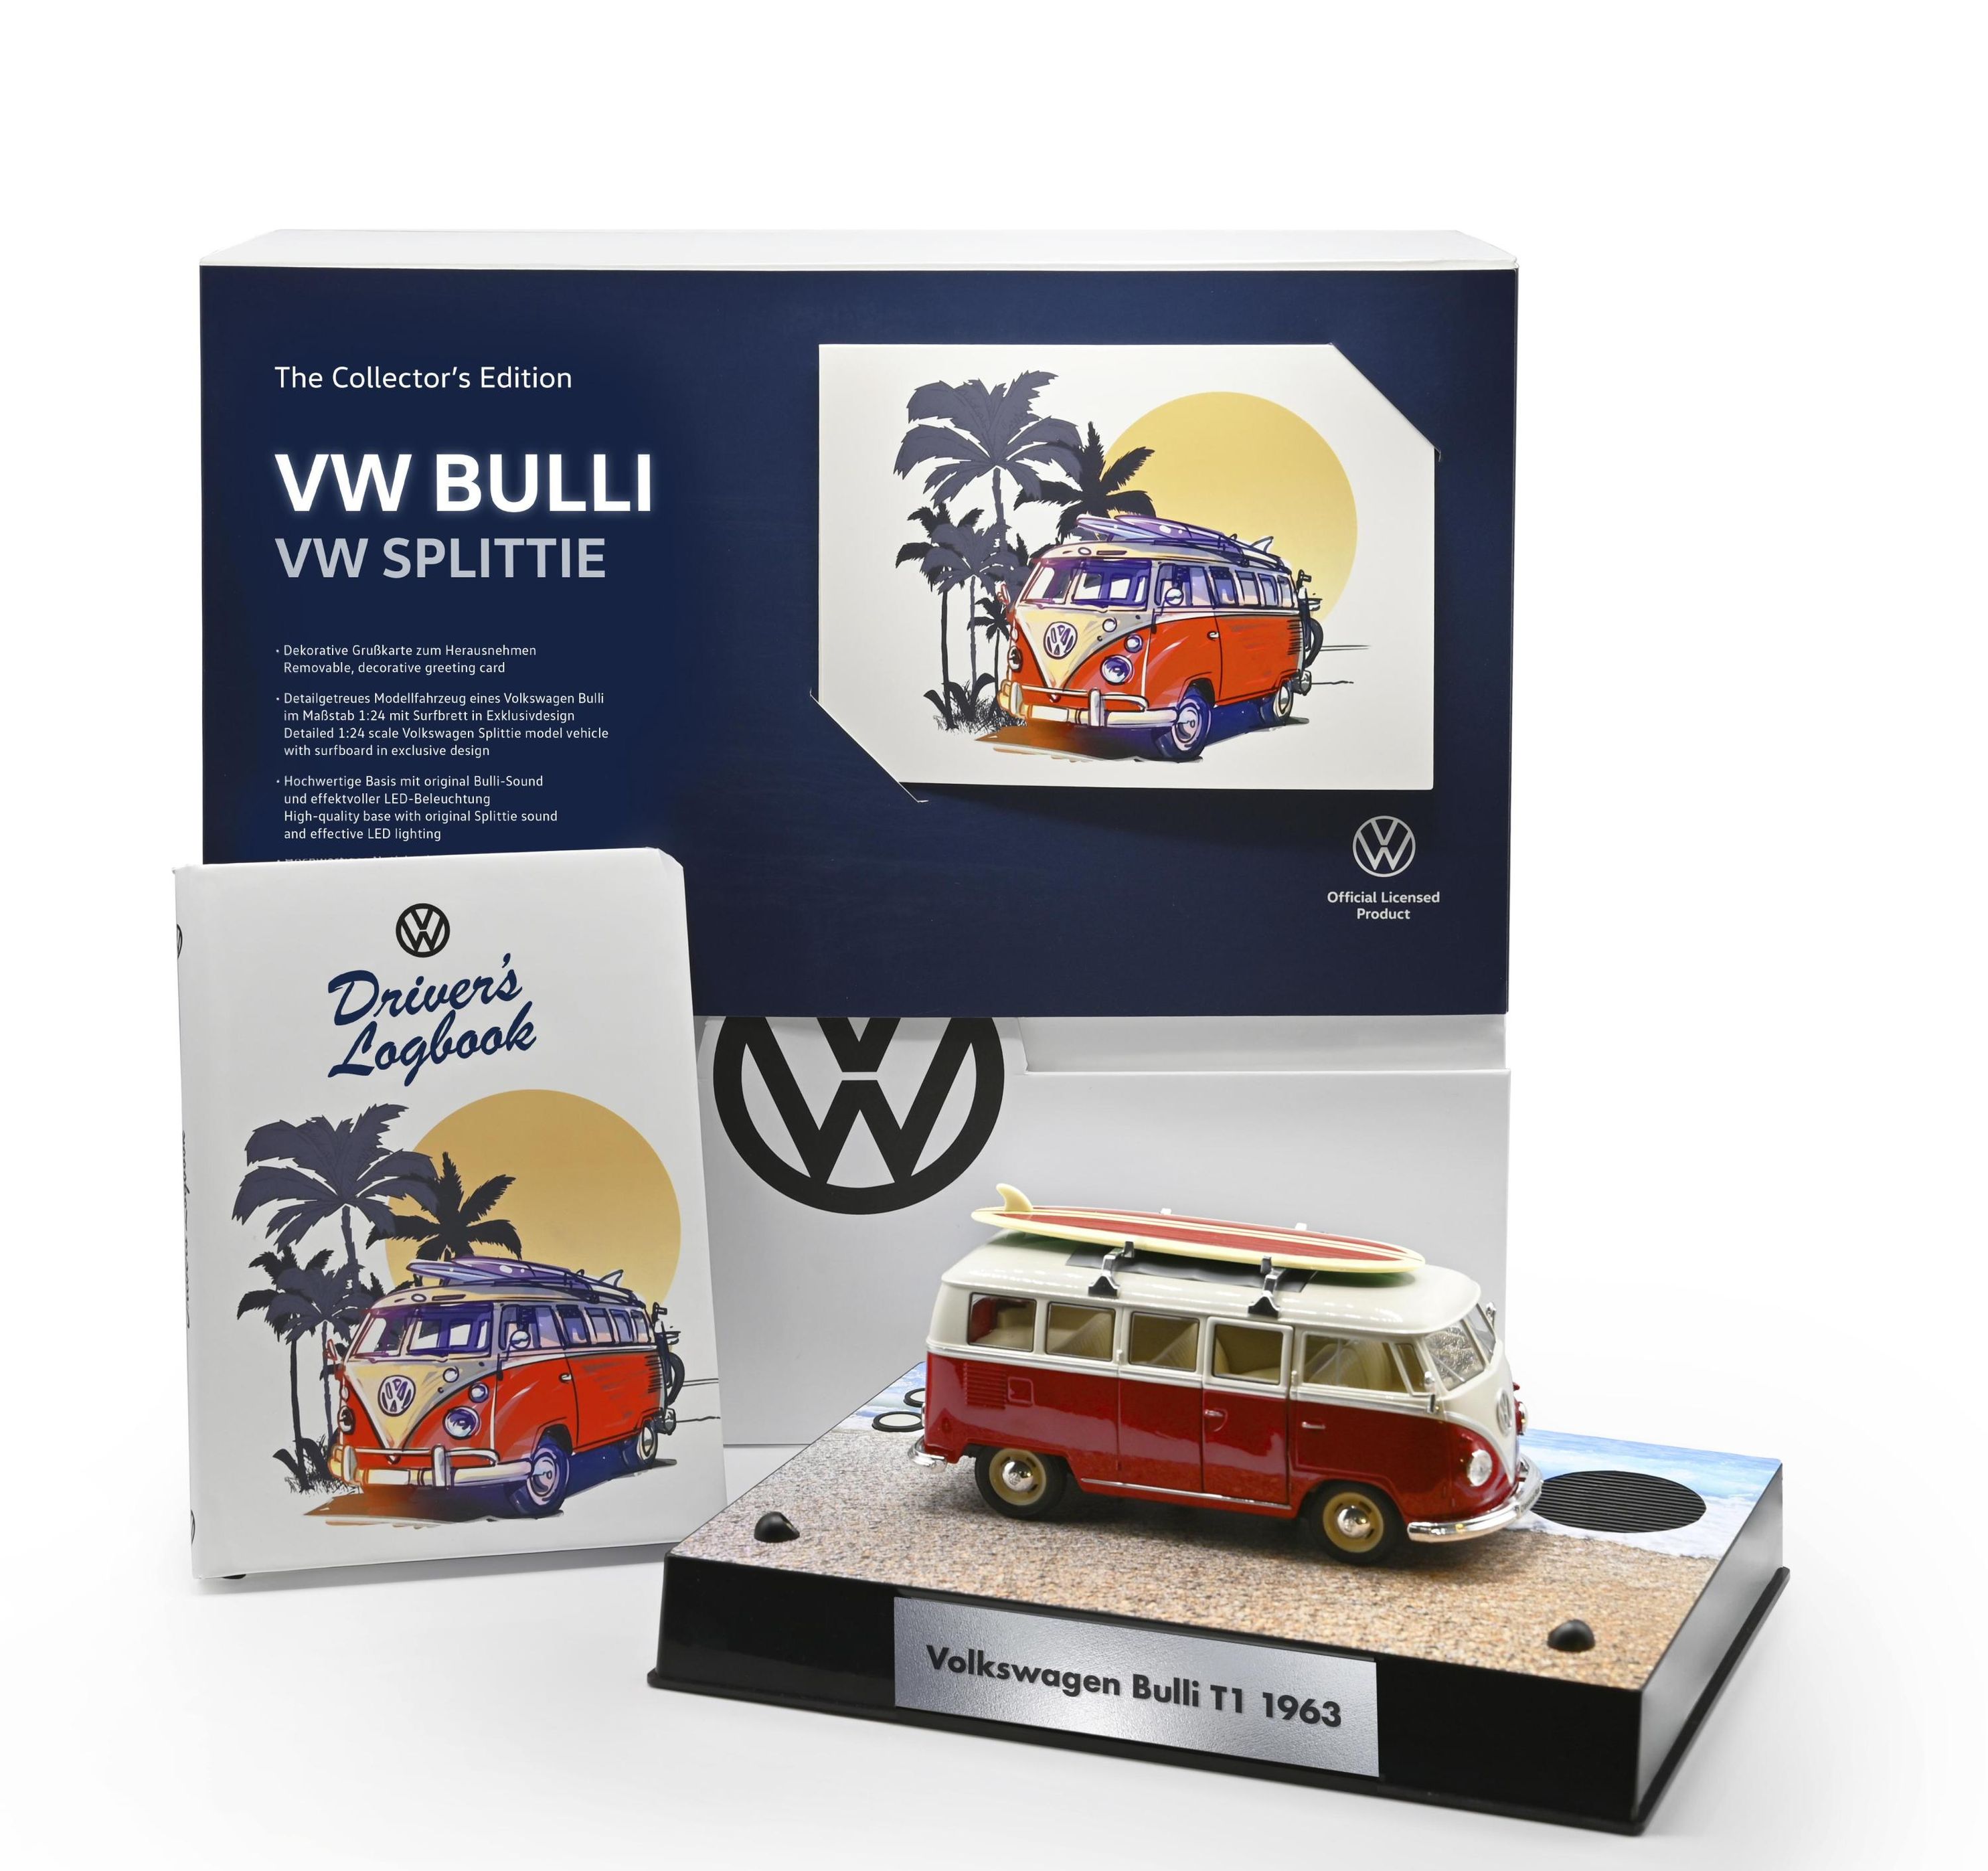 VW Bulli Geschenkideen  Camping geschenke, Volkswagen bus, Geschenke